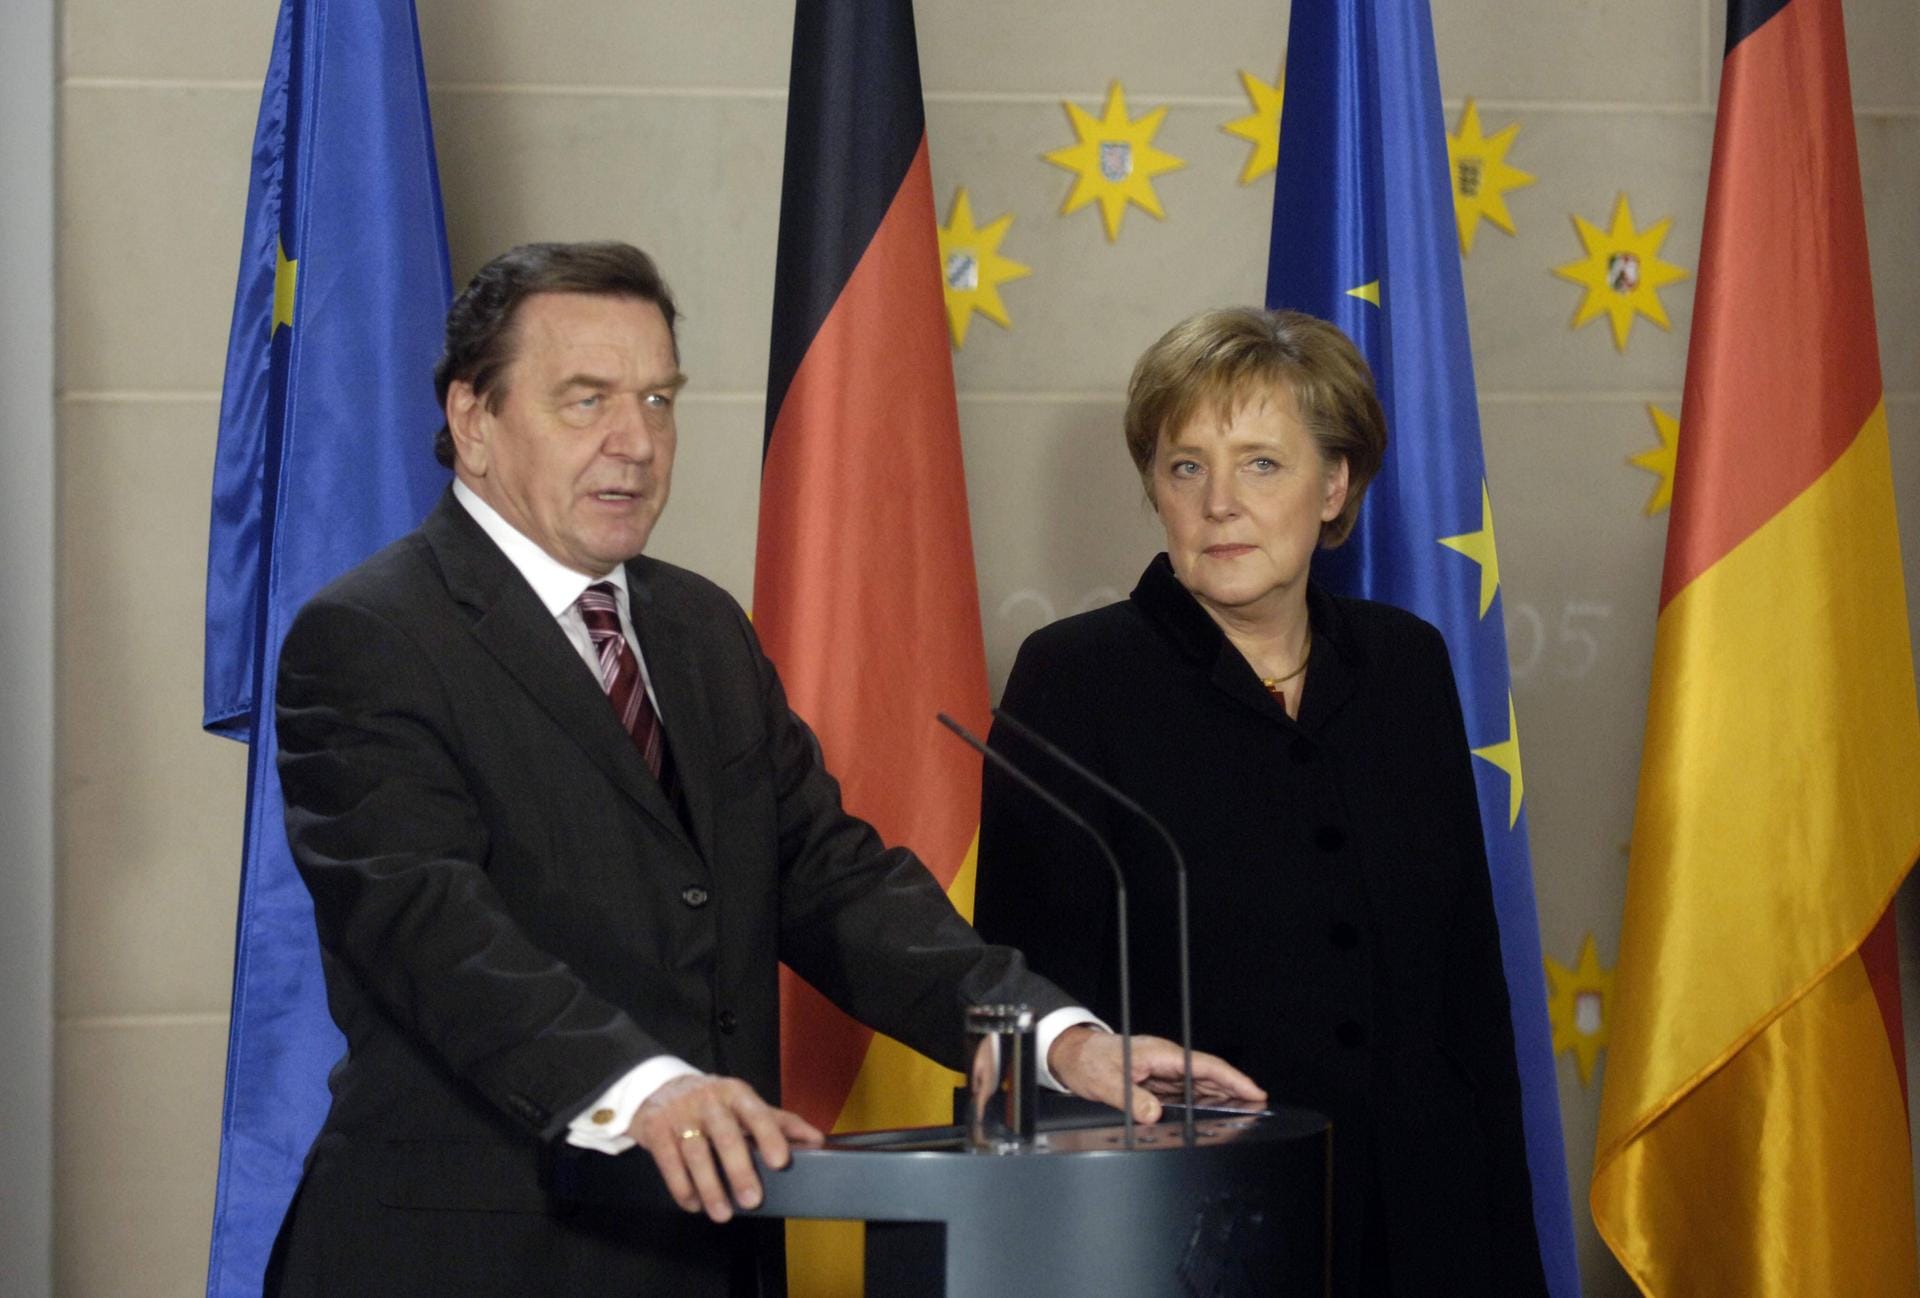 November 2005: Gerhard Schröder verliert als Spitzenkandidat die Wahl. Er übergibt das Amt des Bundeskanzlers an Angela Merkel. Sein Bundestagsmandat legt er nieder.